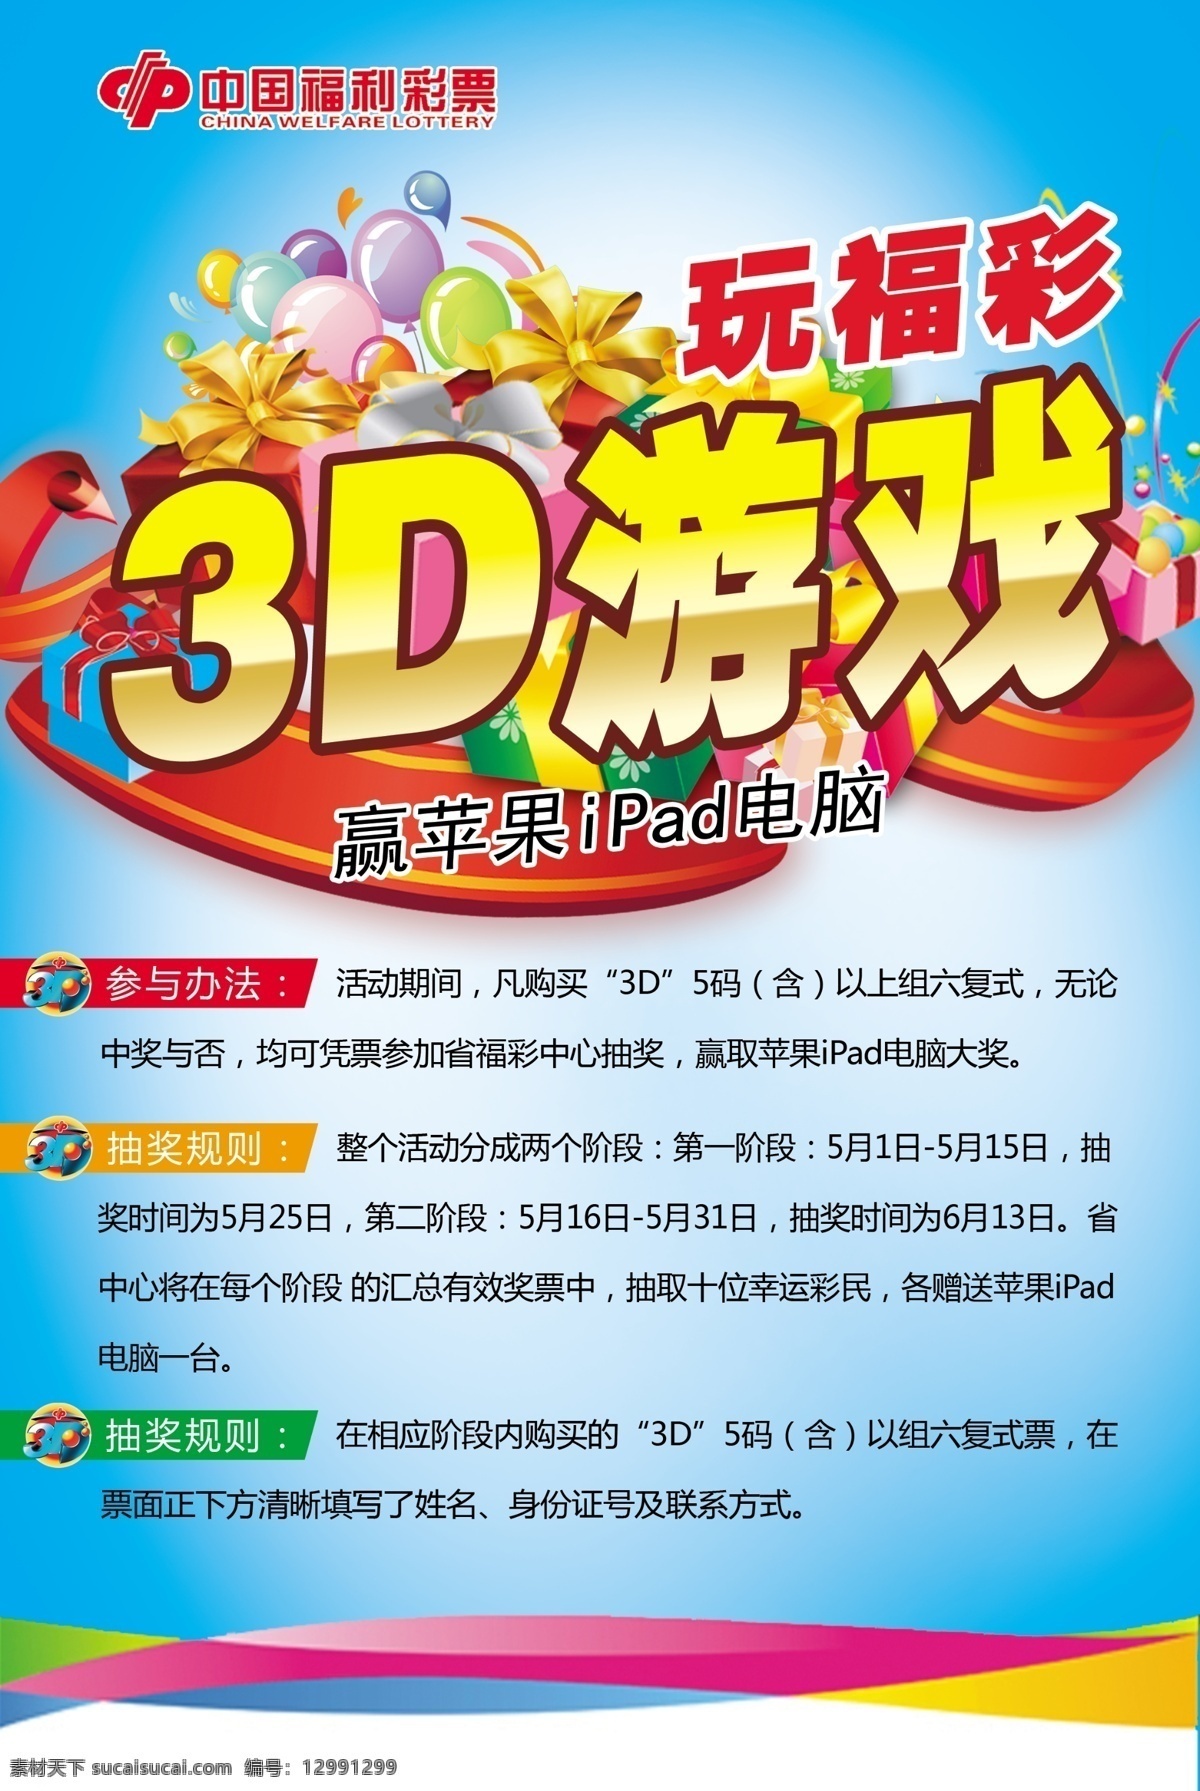 福彩 3d 活动 海报 福彩3d活动 有奖活动 蓝色海报 福彩3d海报 广告设计模板 源文件